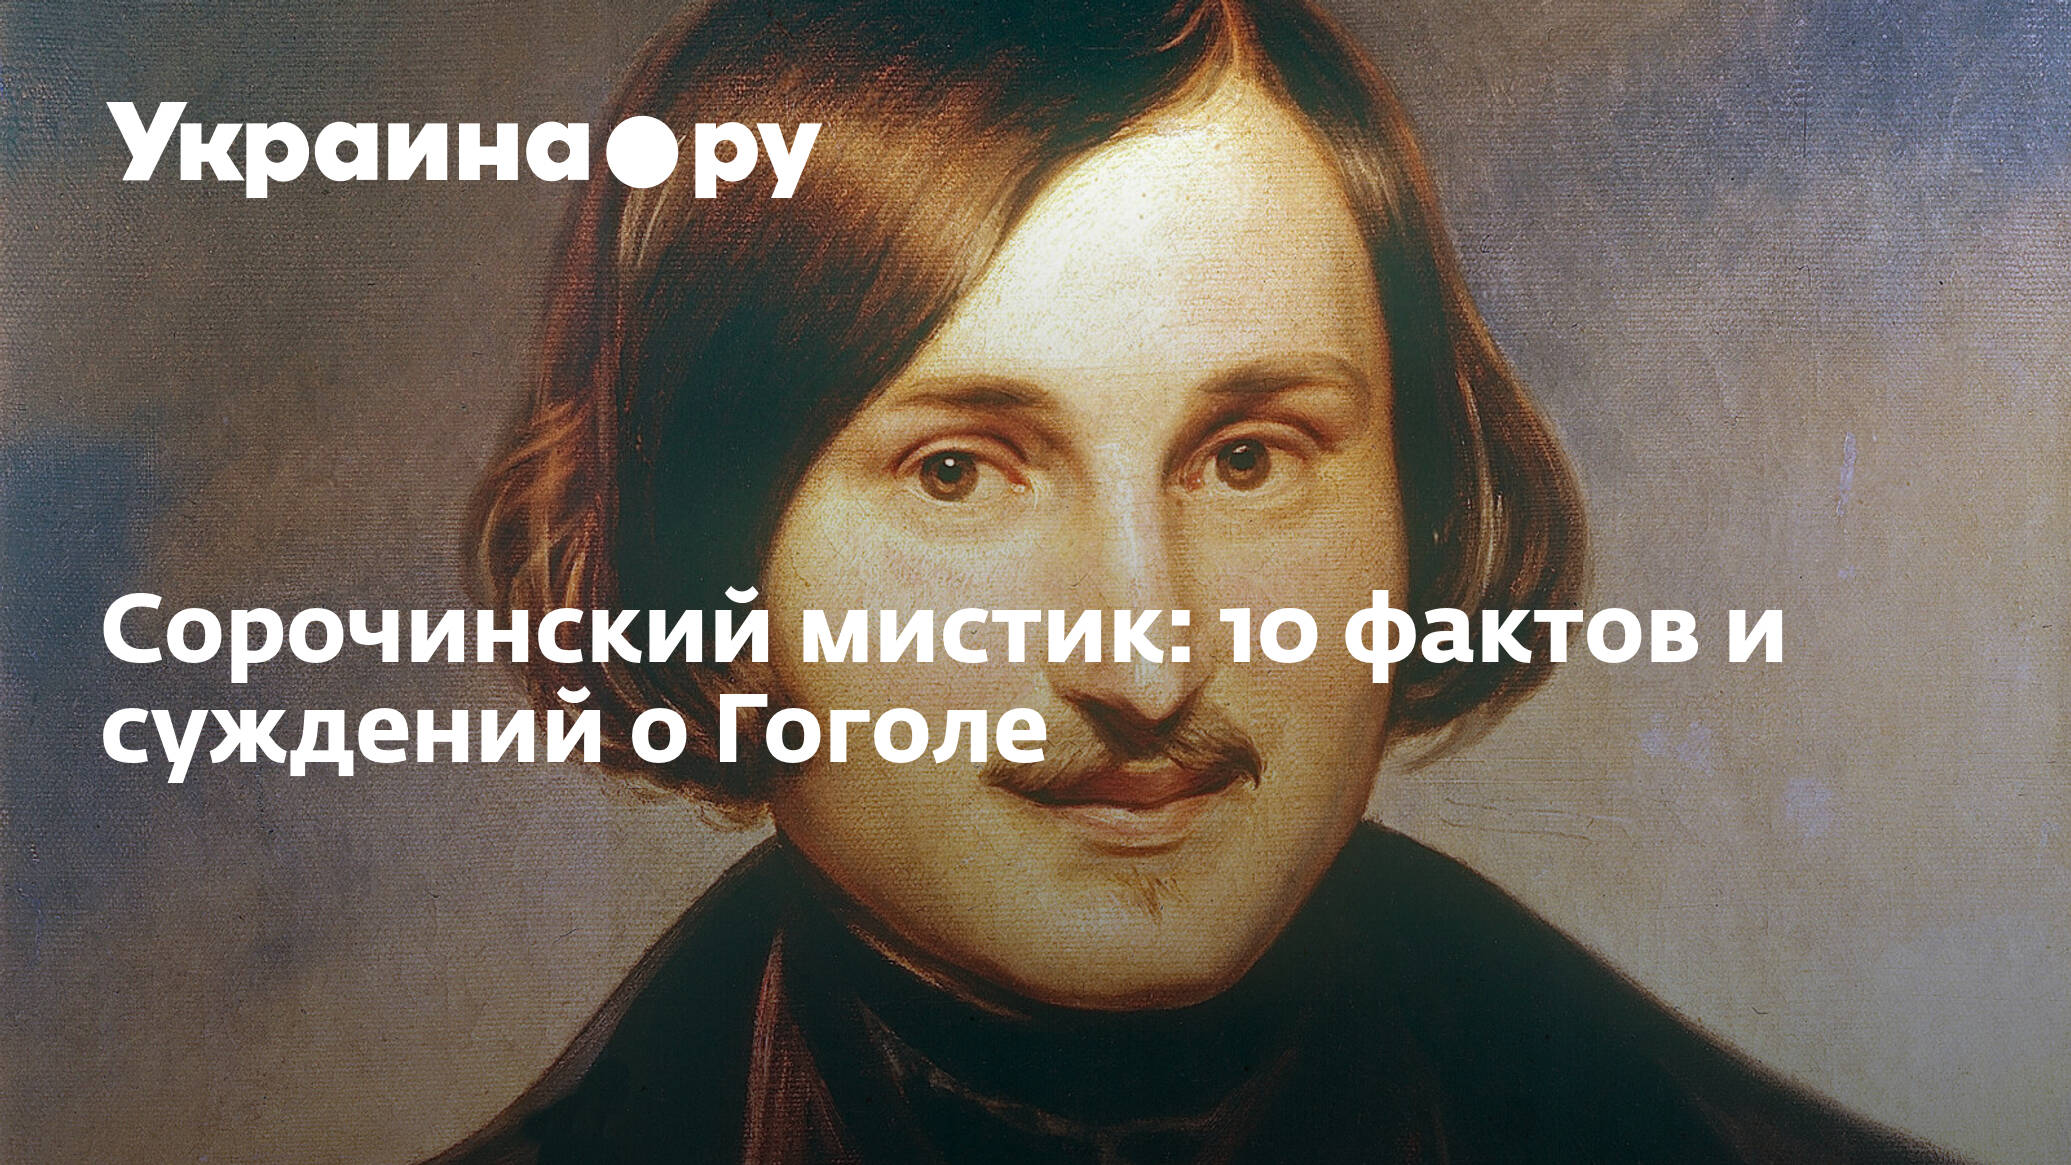 10 Фактов о Гоголе. Мистические факты о Гоголе. Цитаты Гоголя. Факты о Гоголе интересные короткие.